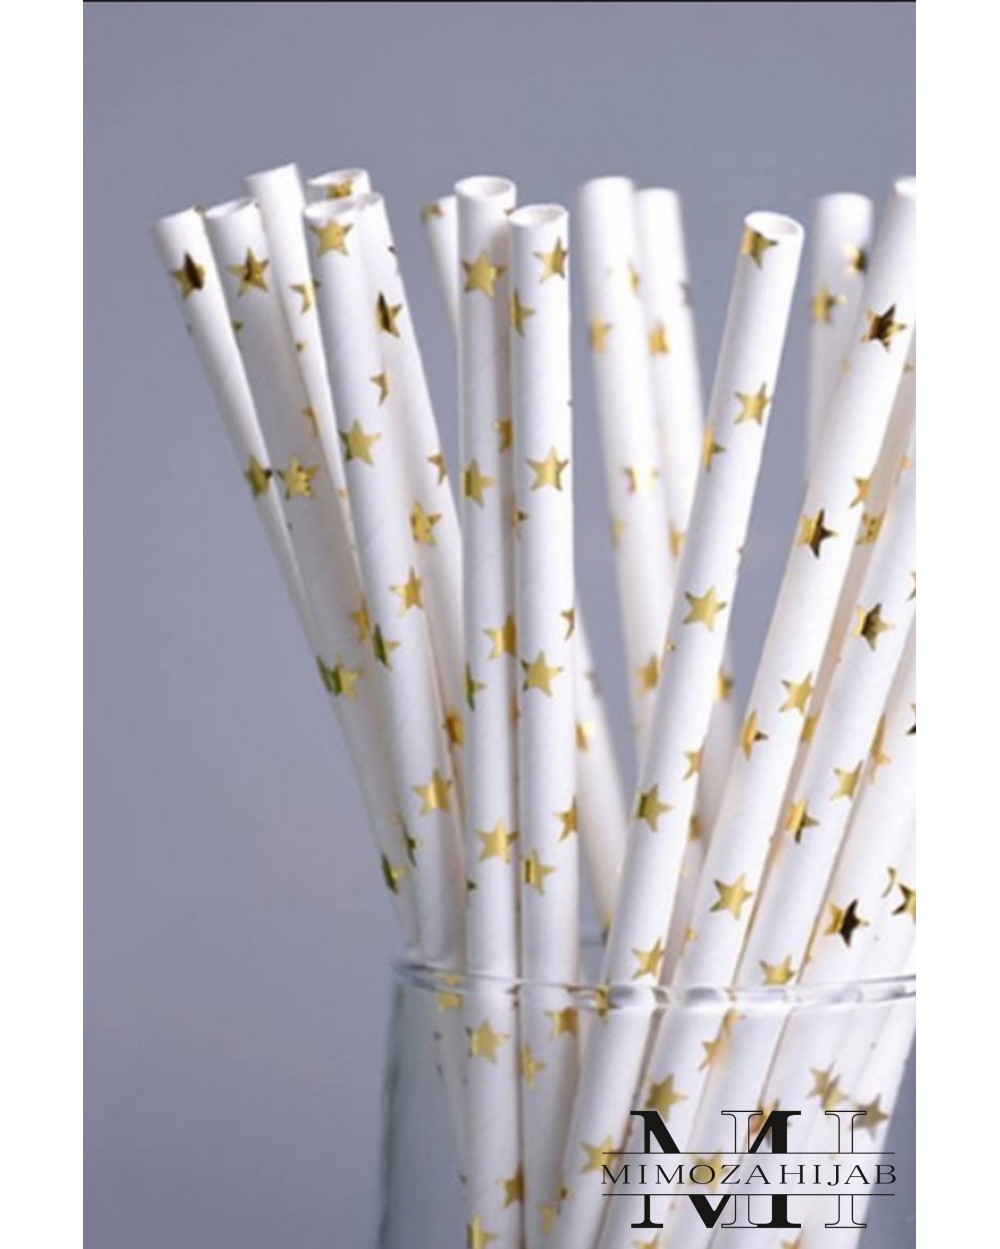 25 cardboard straws with metalized stars